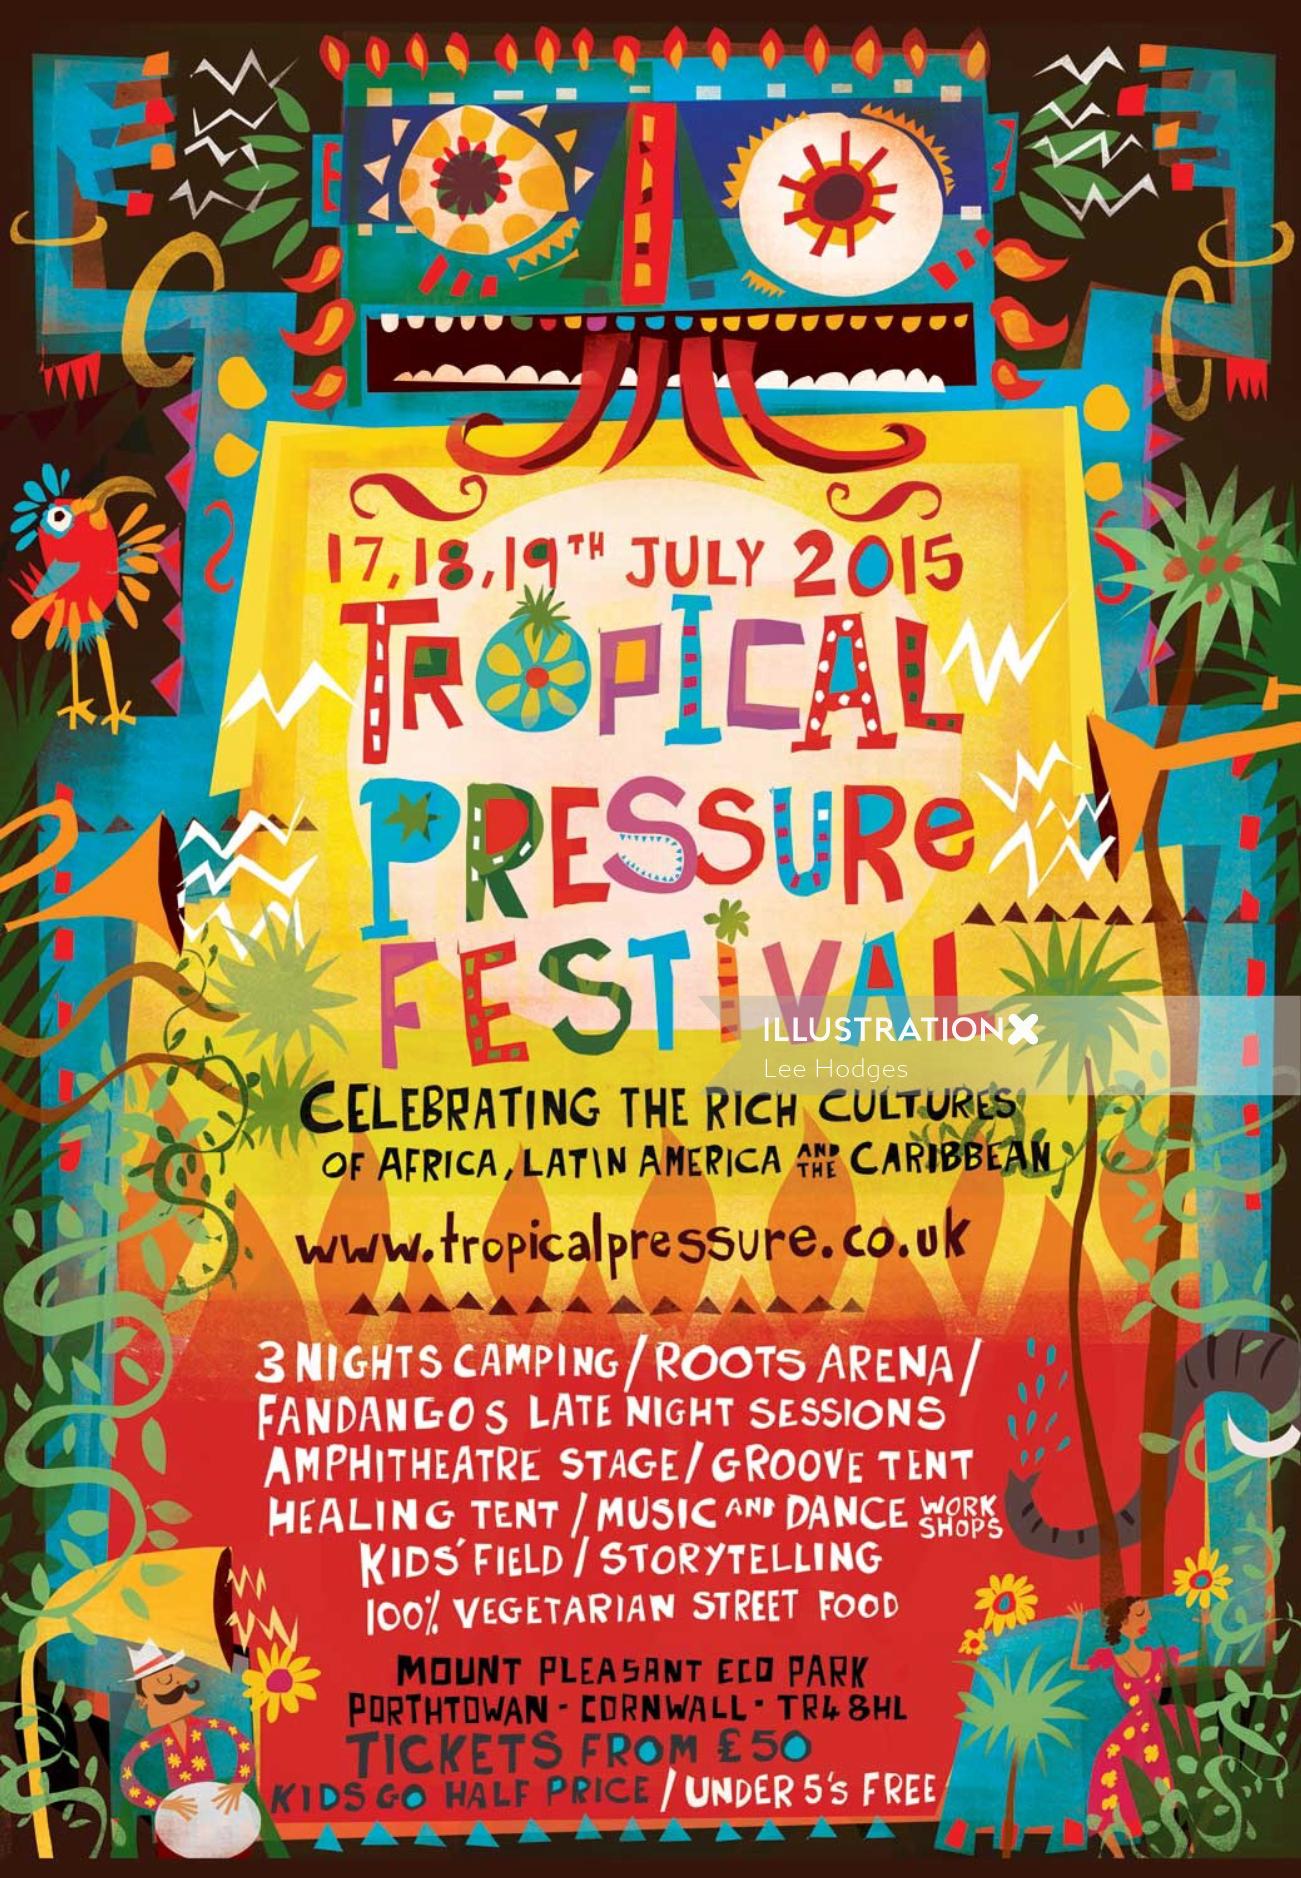 Arte del cartel para el festival de presión tropical